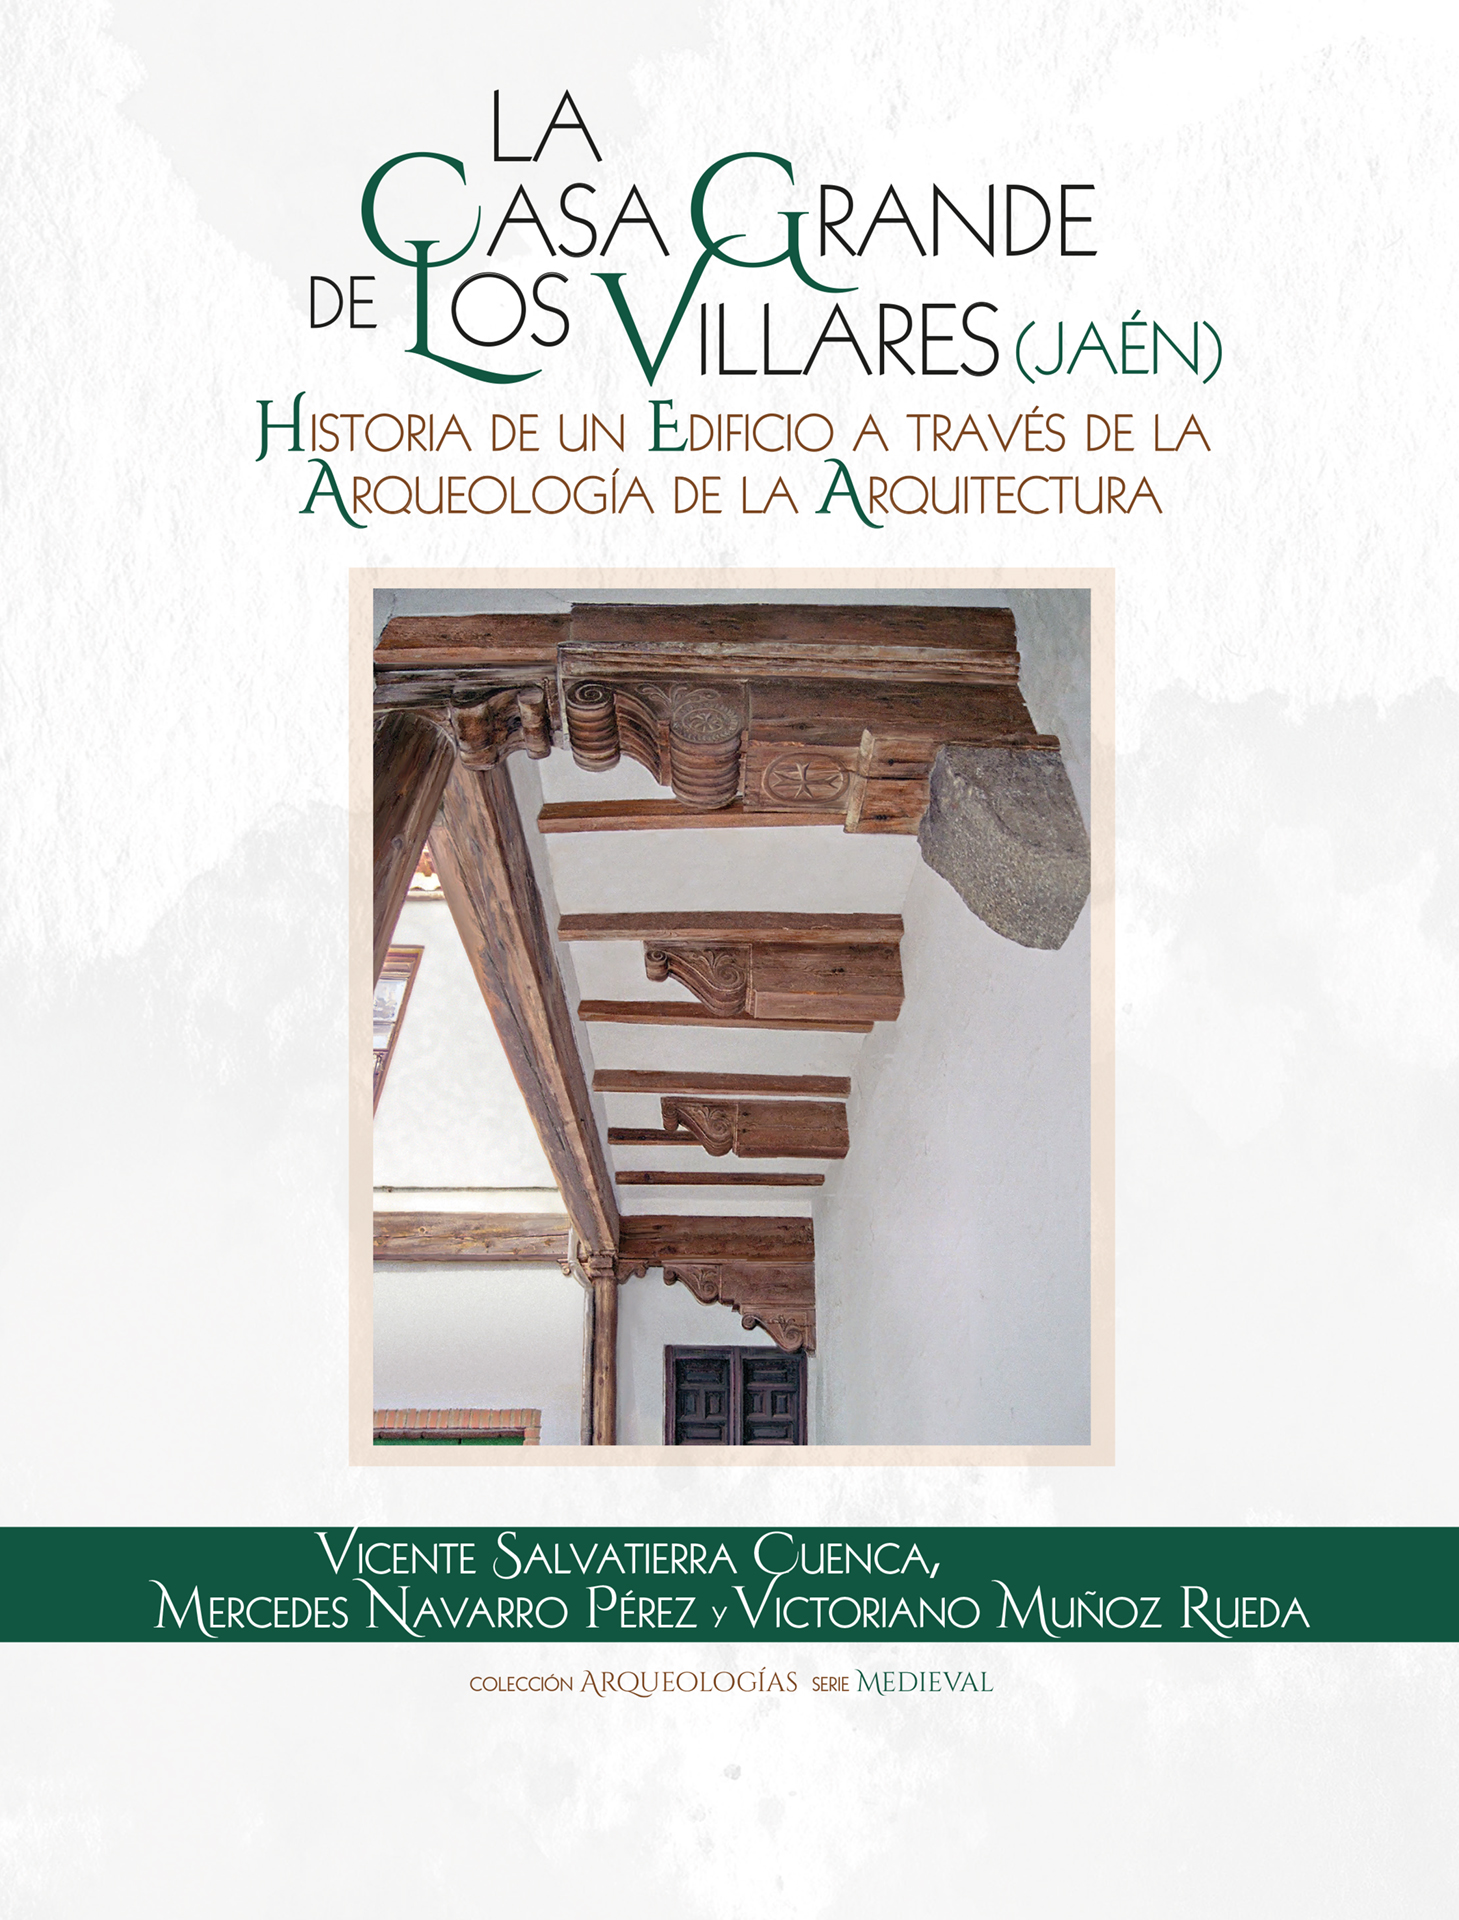 La Casa Grande de los Villares (Jaén)